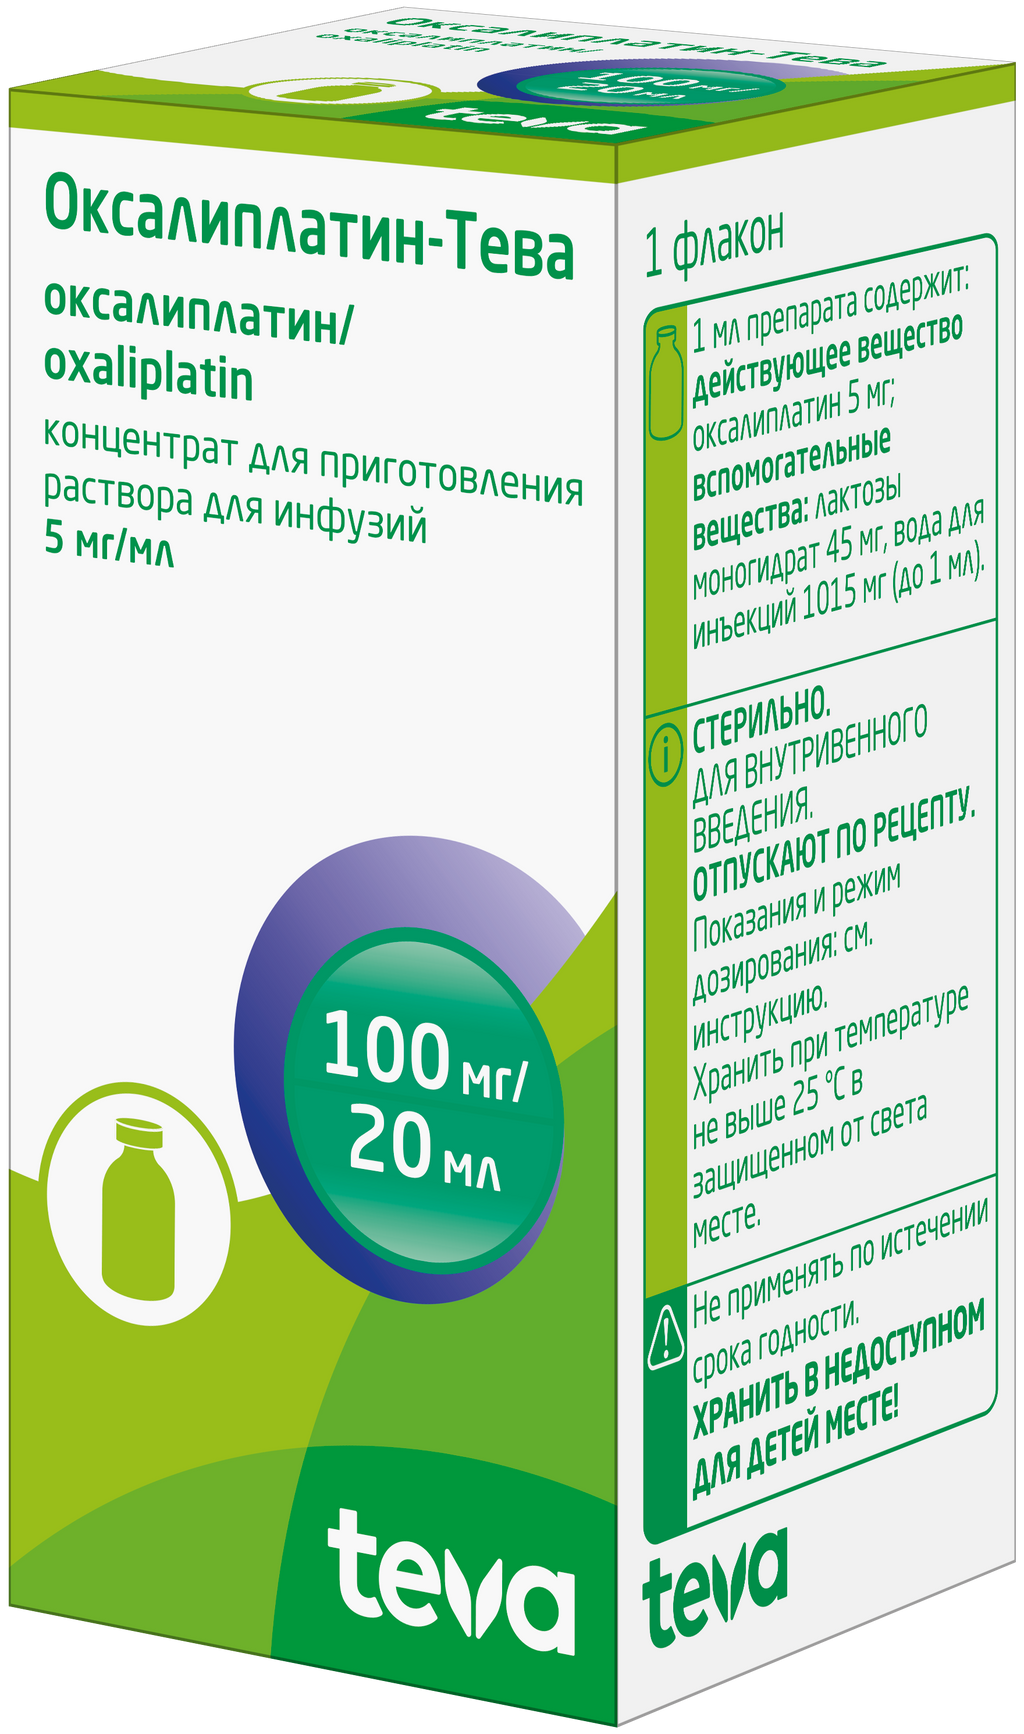 Оксалиплатин-Тева, 5 мг/мл, концентрат для приготовления раствора для инфузий, 20 мл, 1 шт.